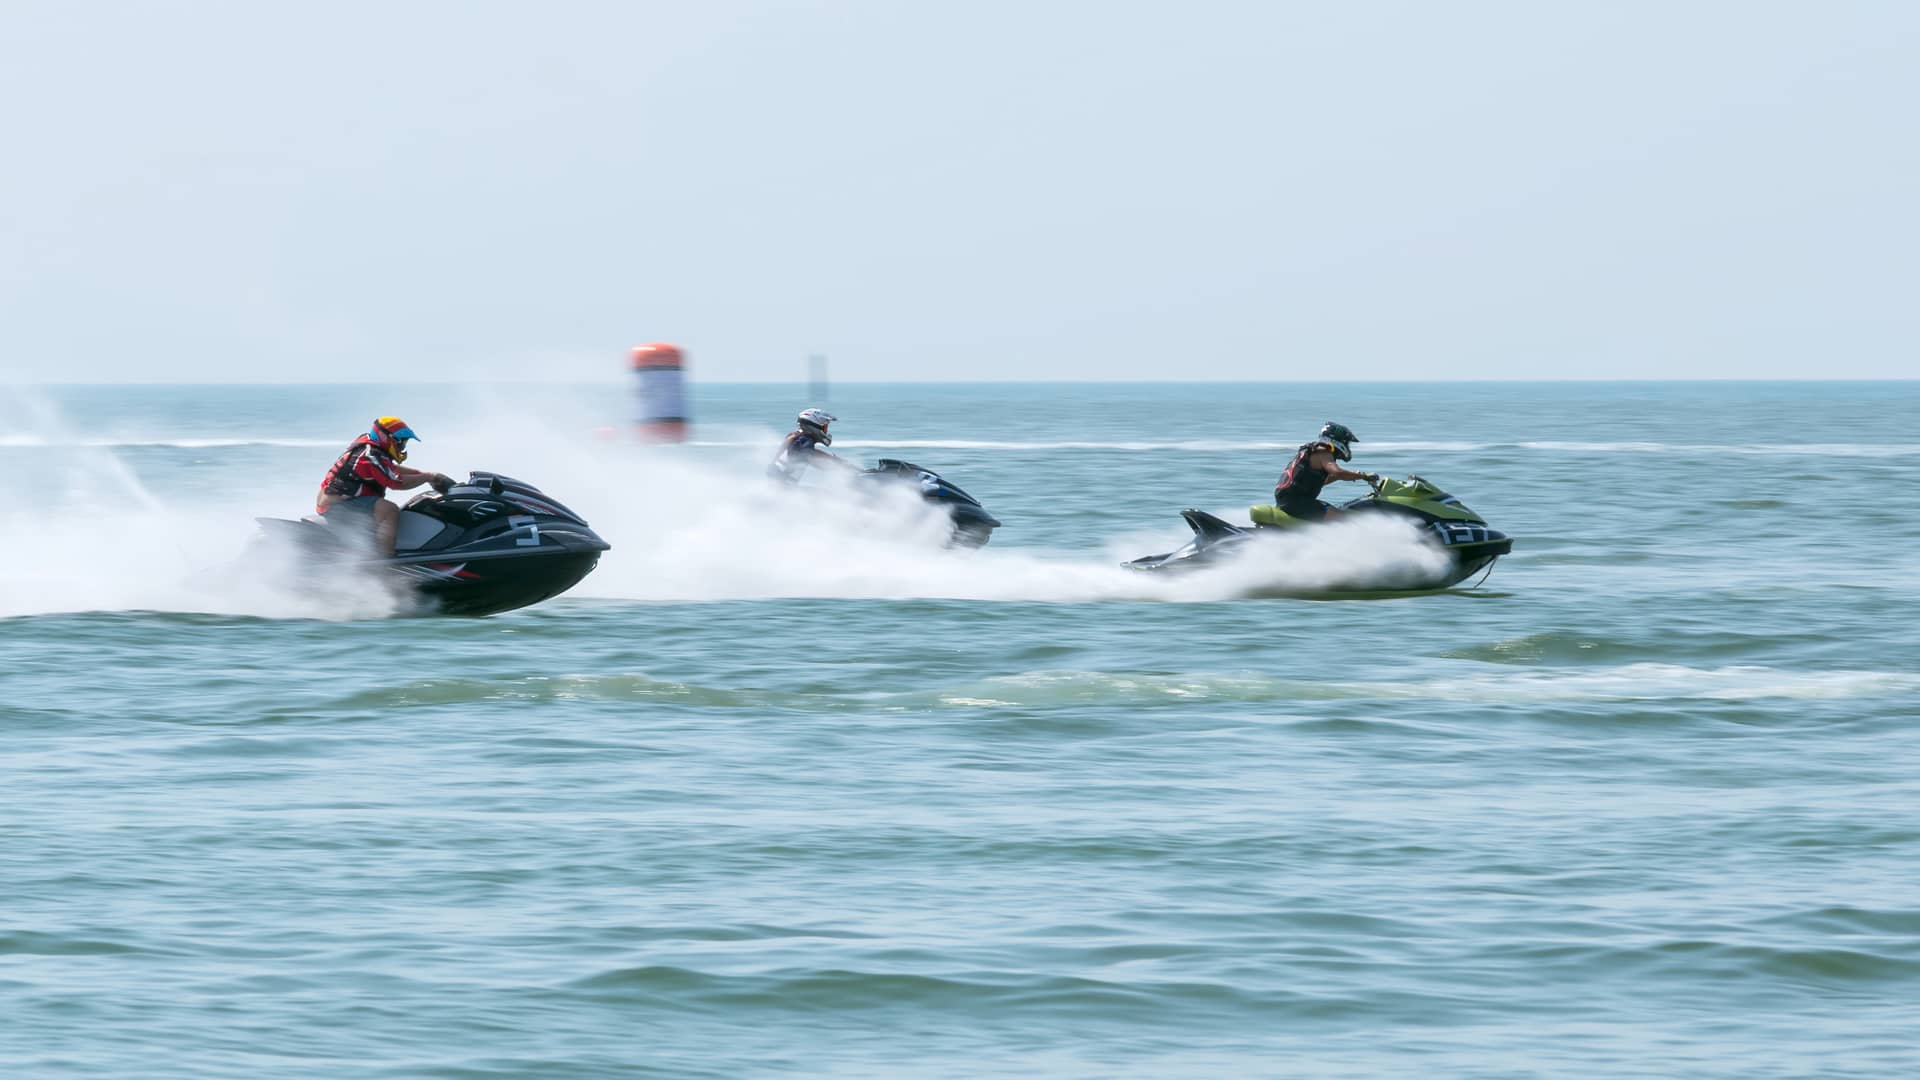 Personas compitiendo en una carrera de motos de agua con la tranquilidad que aporta tener un seguro para las mismas